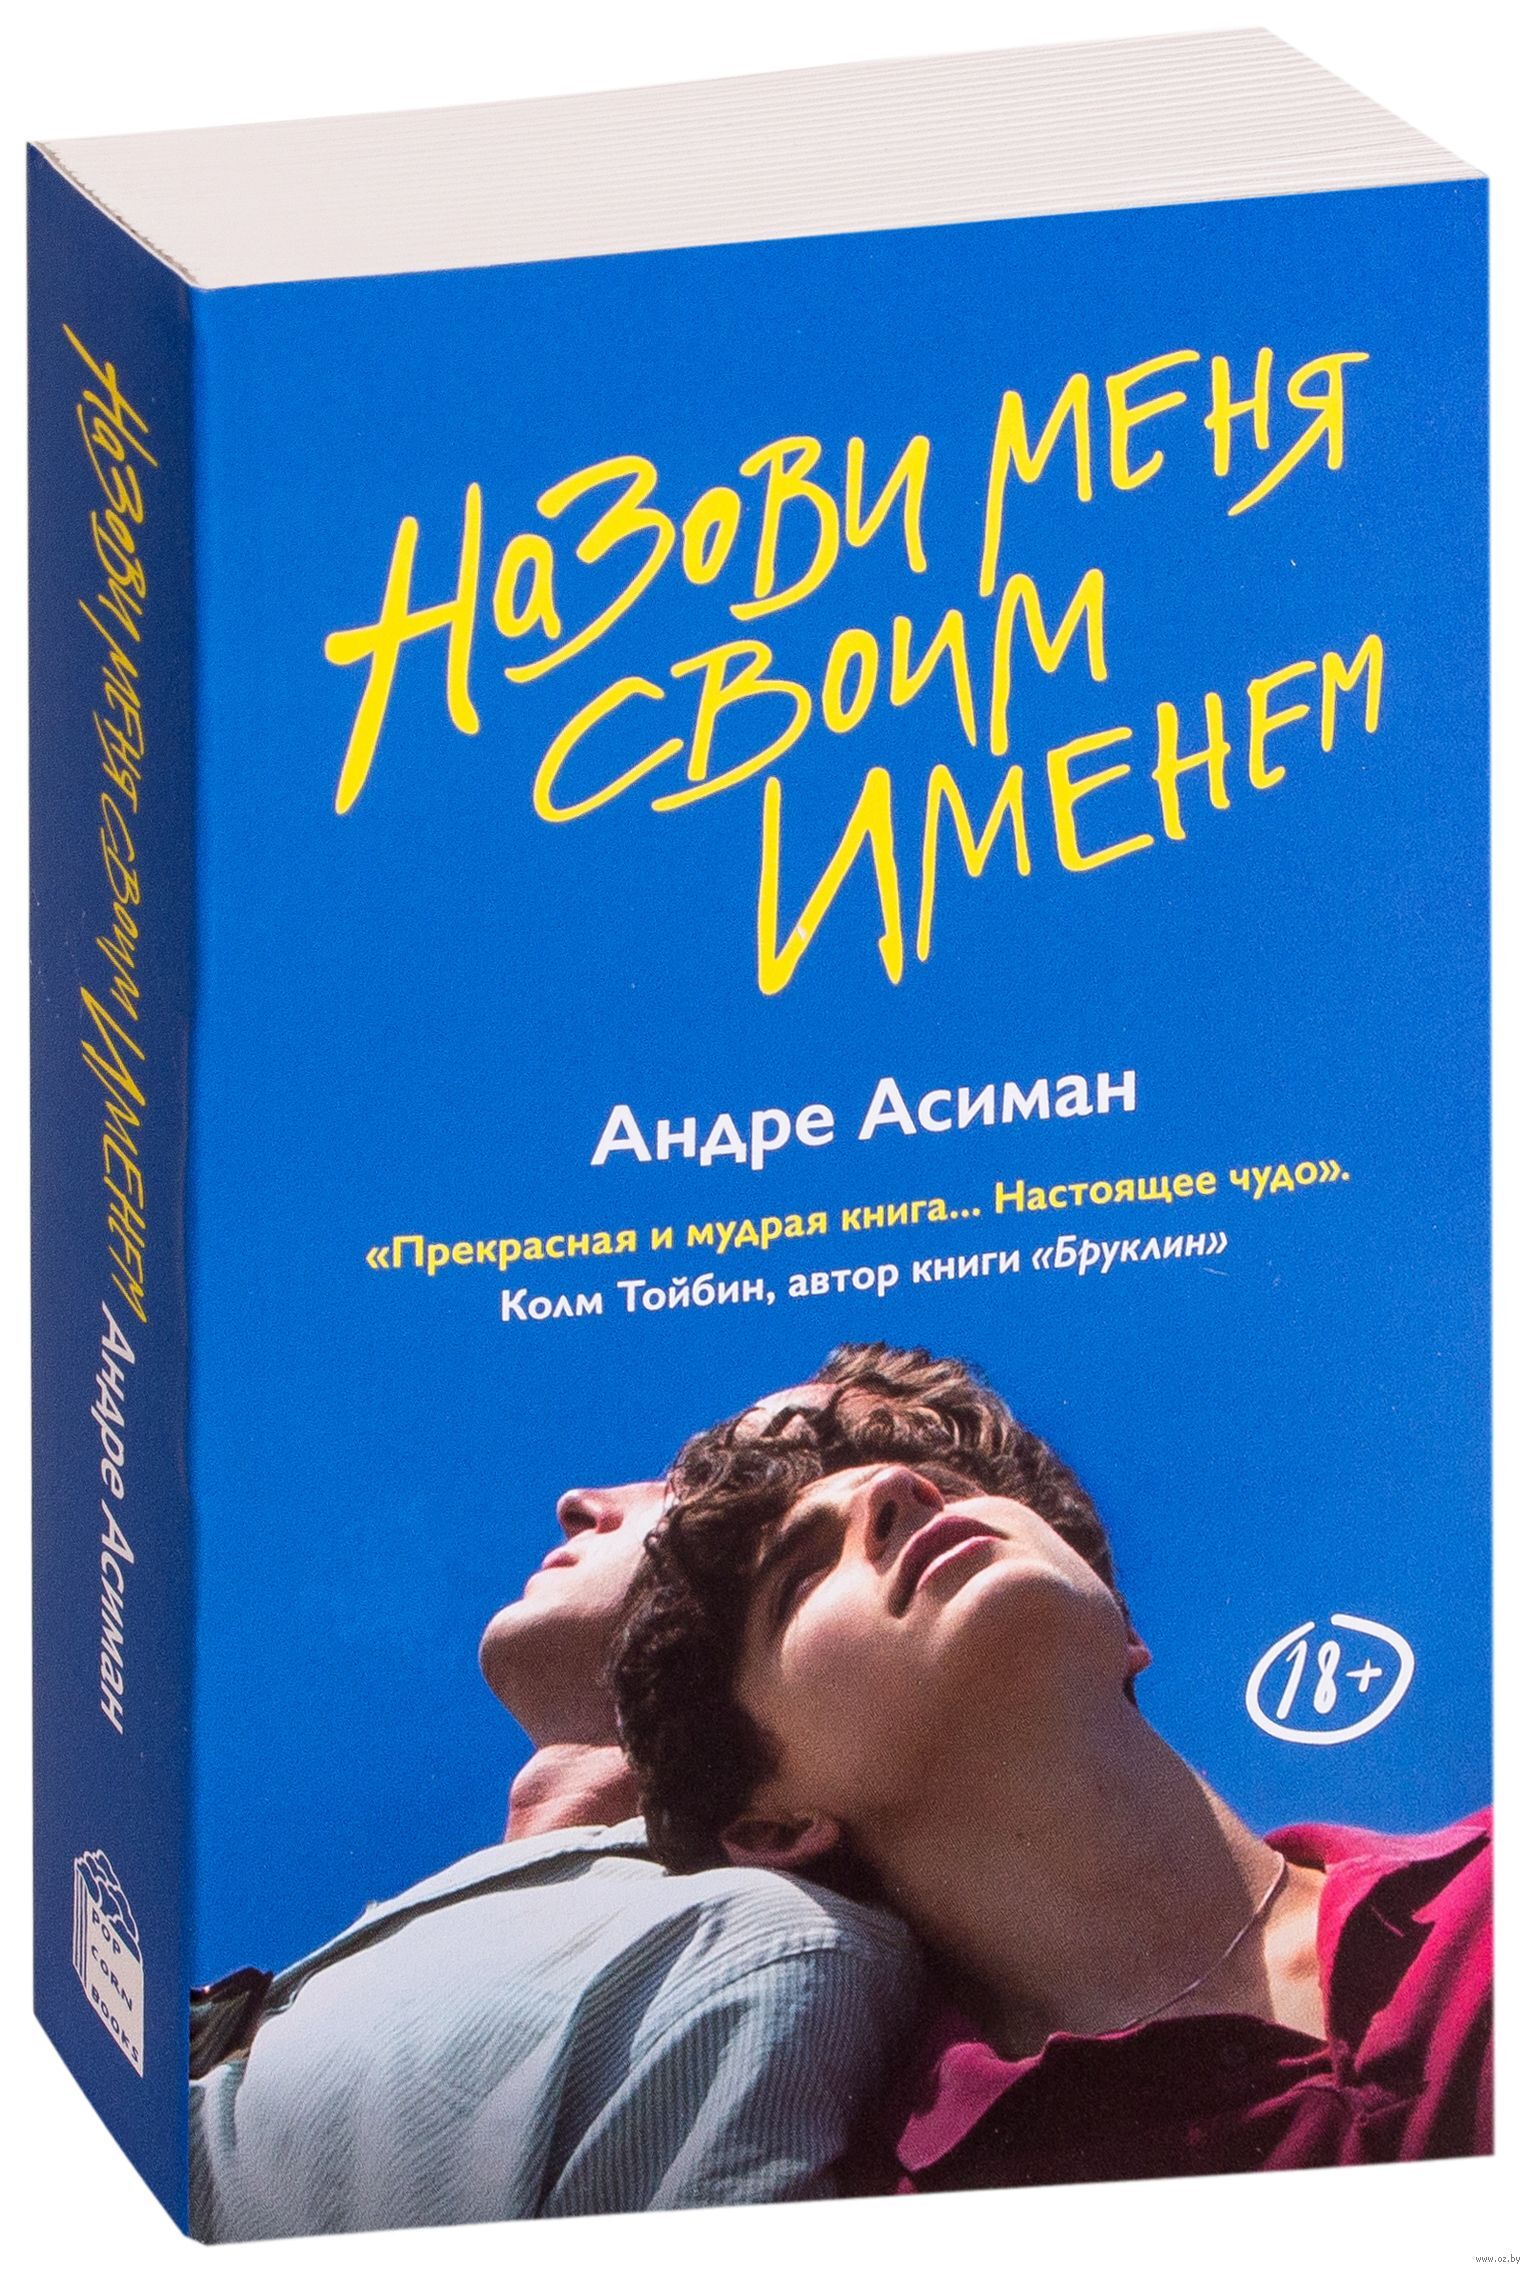 Андре асиман назови меня. Андре Асиман назови меня своим именем. Зови меня своим именем Андре Асиман книга. Обложка книги Андре Асиман назови меня своим именем. Назови меня книга.